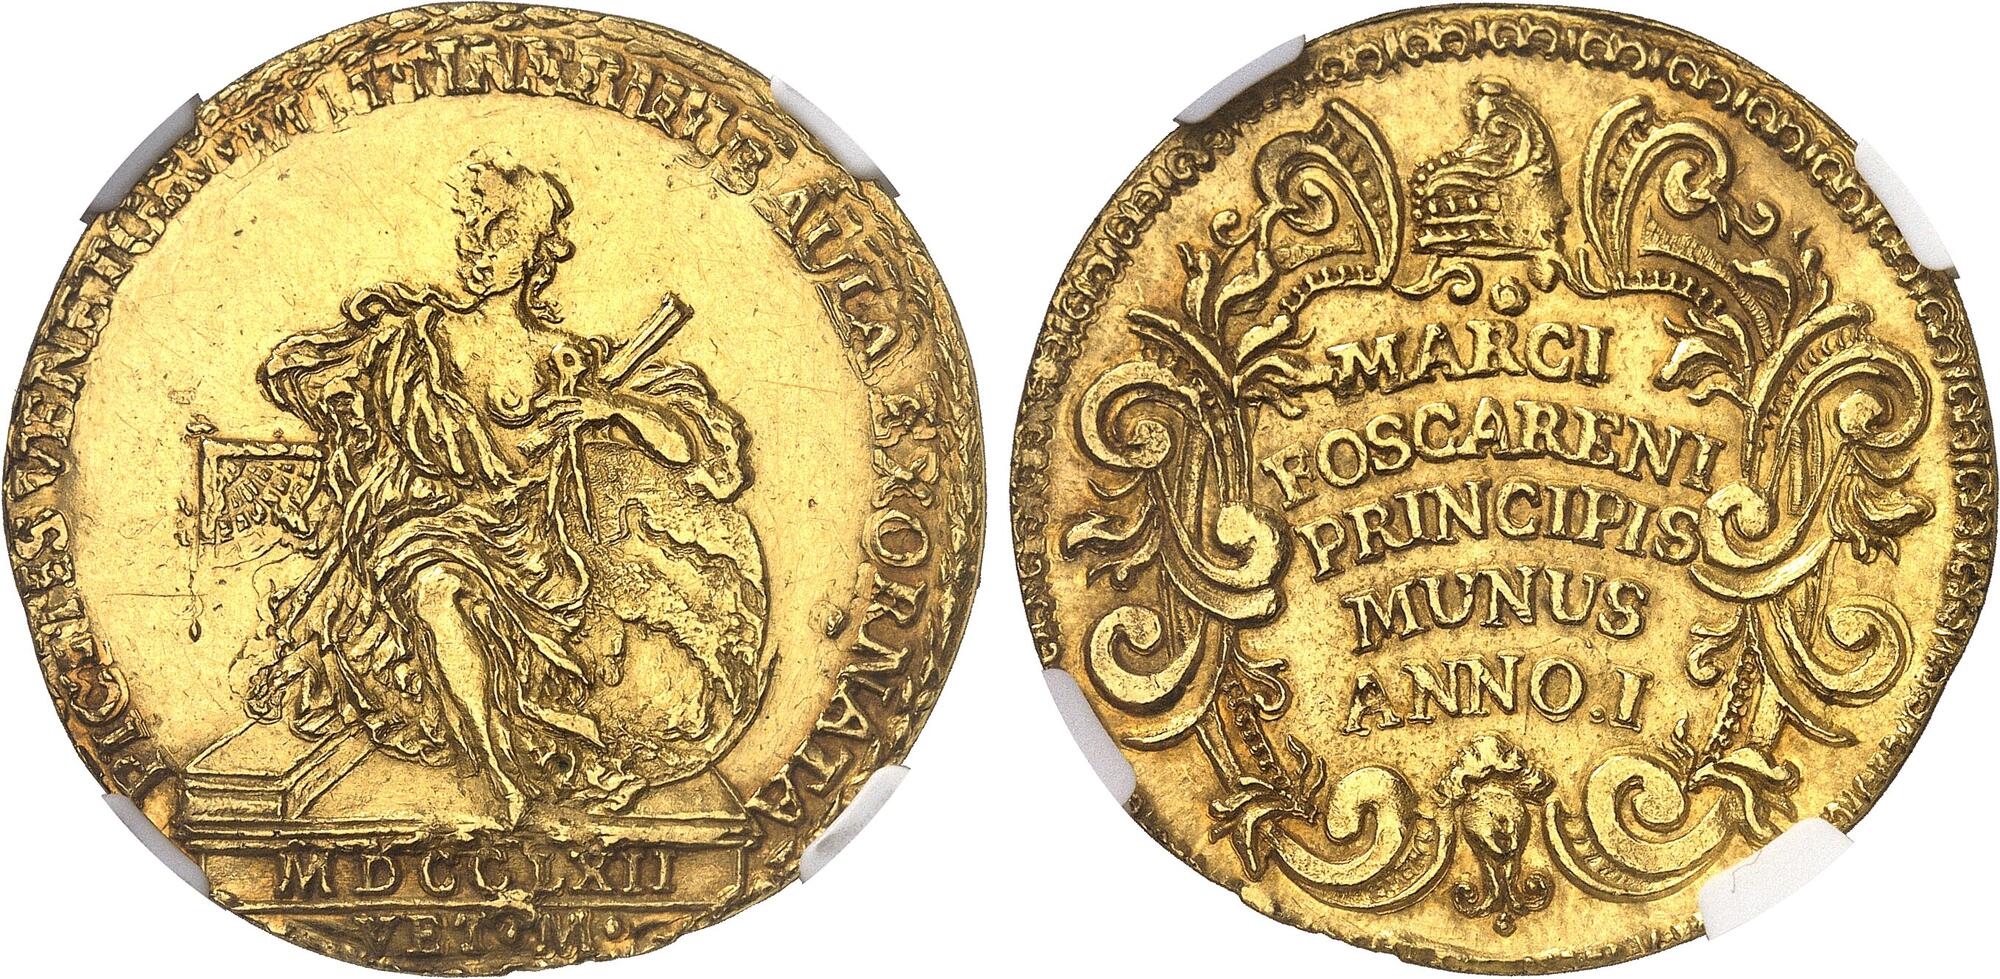 Rarissimo esemplare in oro dell'unica osella a nome di Marco Foscarini coniato nel 1762 per celebrare l'abbellimento della Sala dello Scudo in Palazzo Ducale